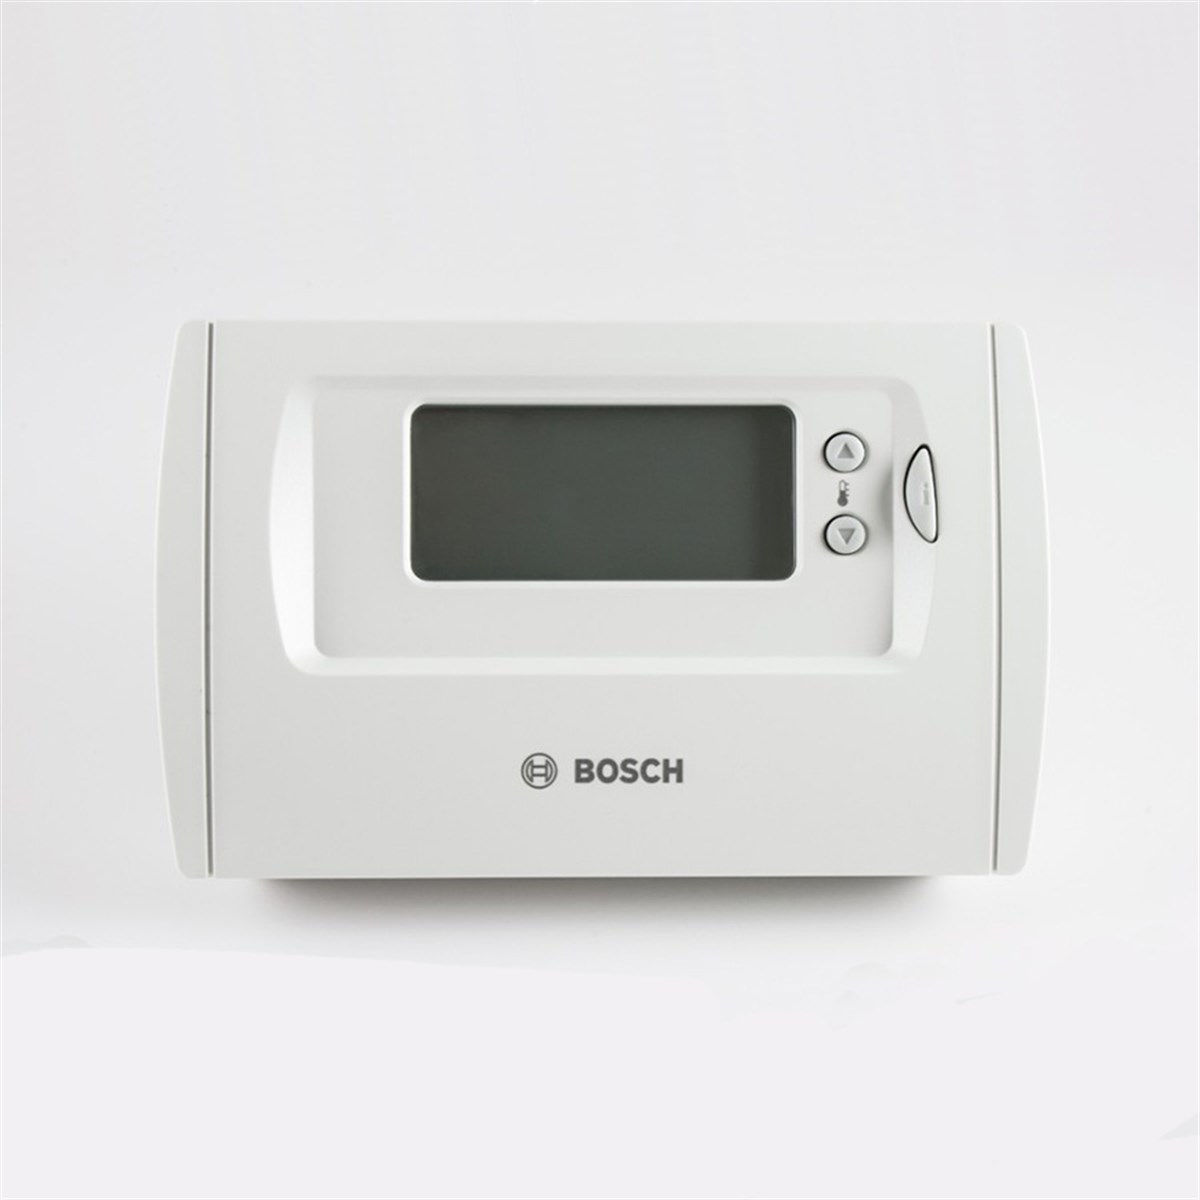 Bosch TR 36 RF Kablosuz Programlanabilir Oda Termostatı